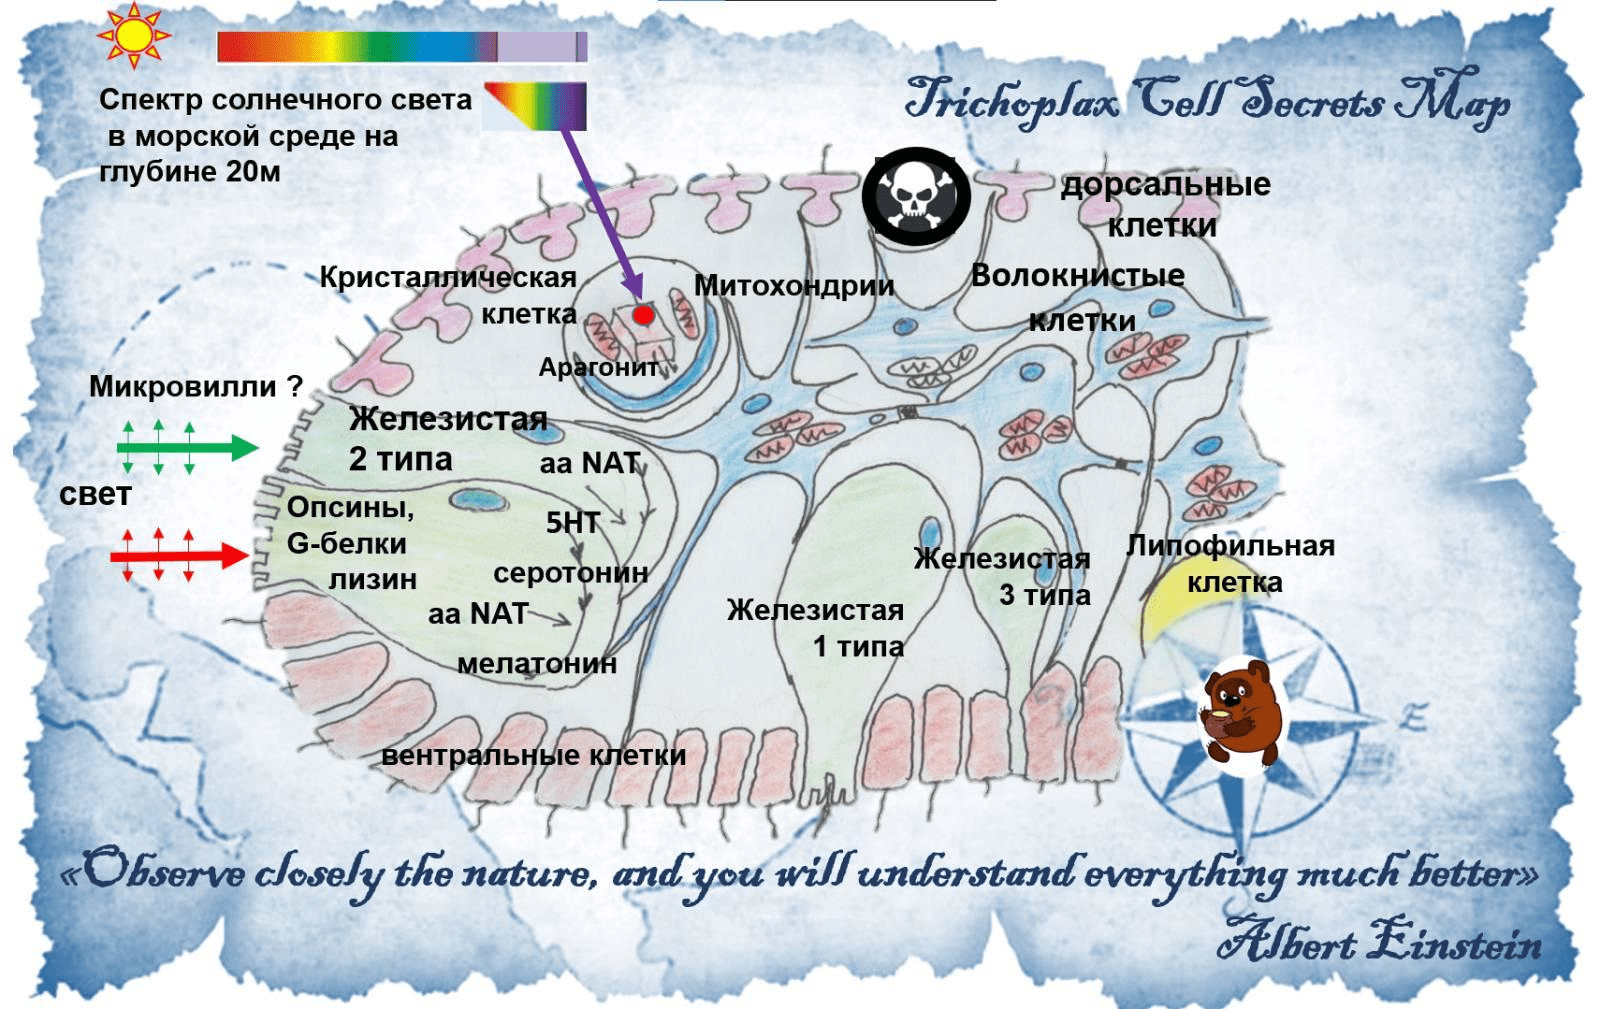 Карта трихоплакса